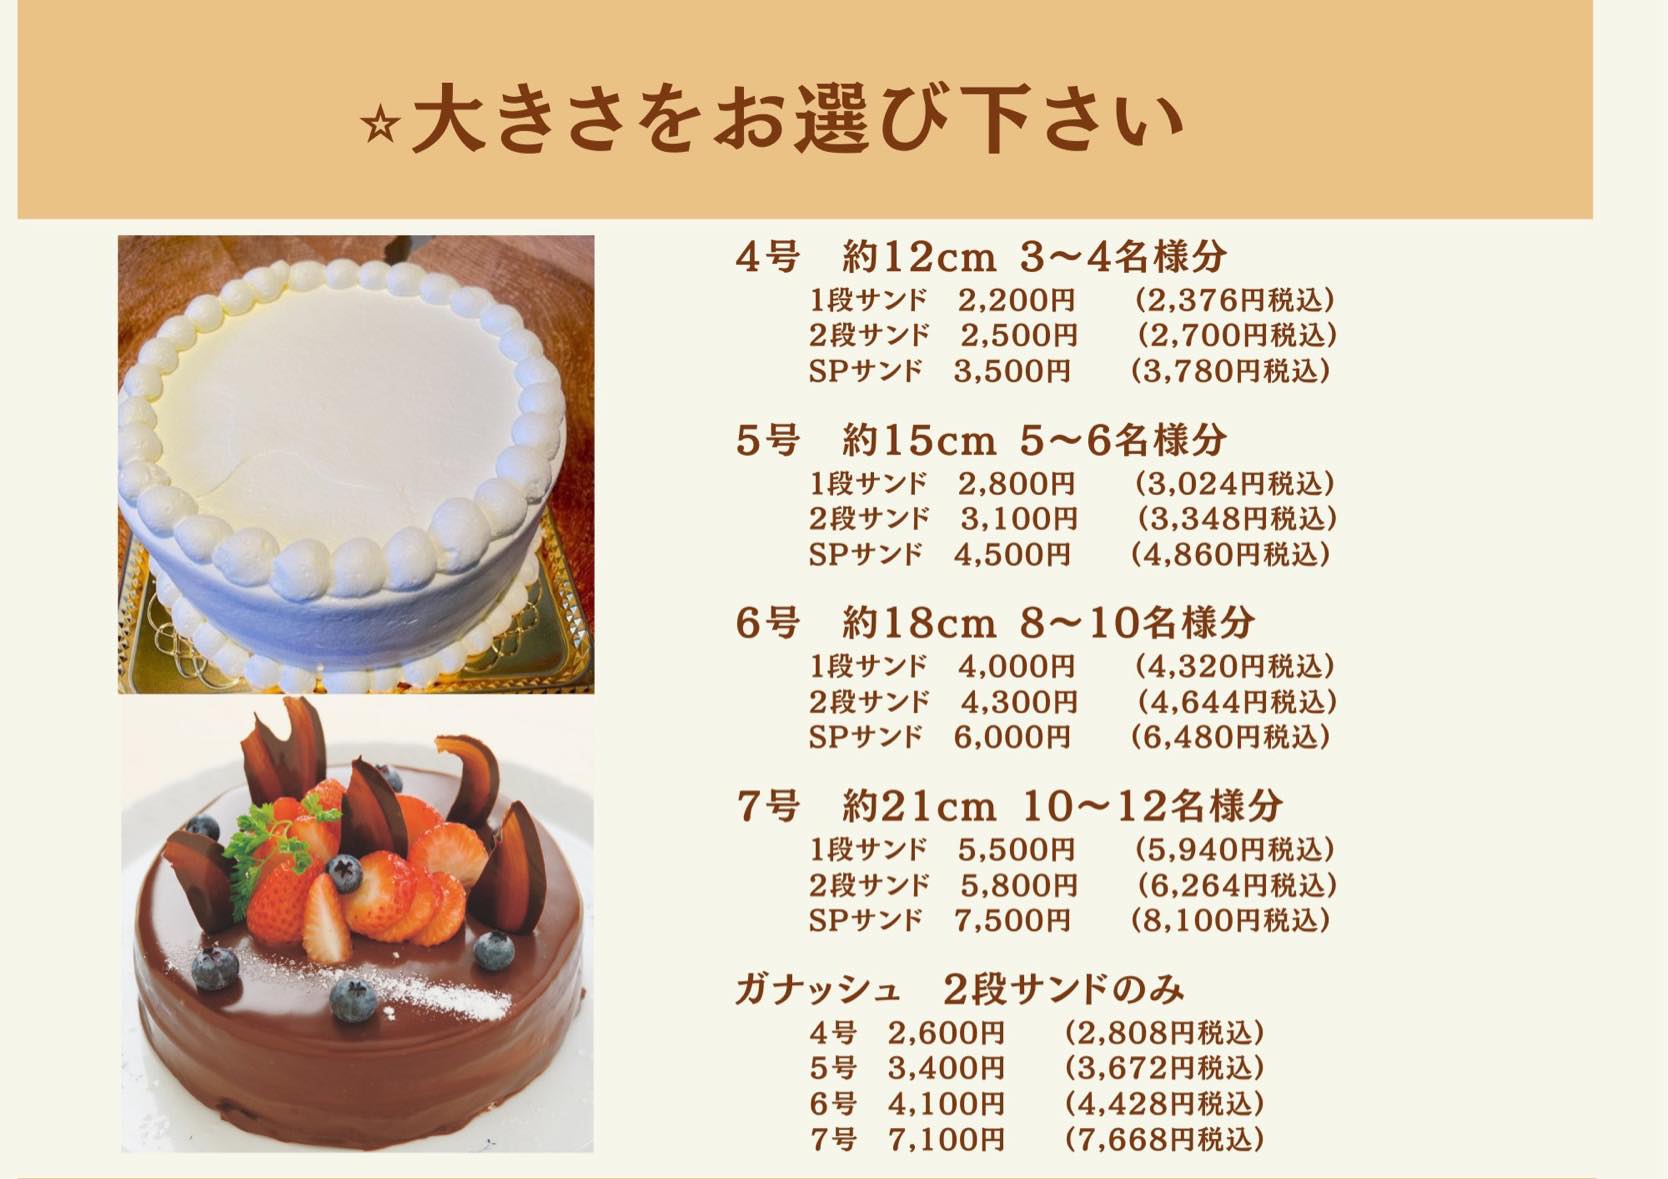 ルモンド ケーキ コレクション ルモンド 公式 オンラインショップ